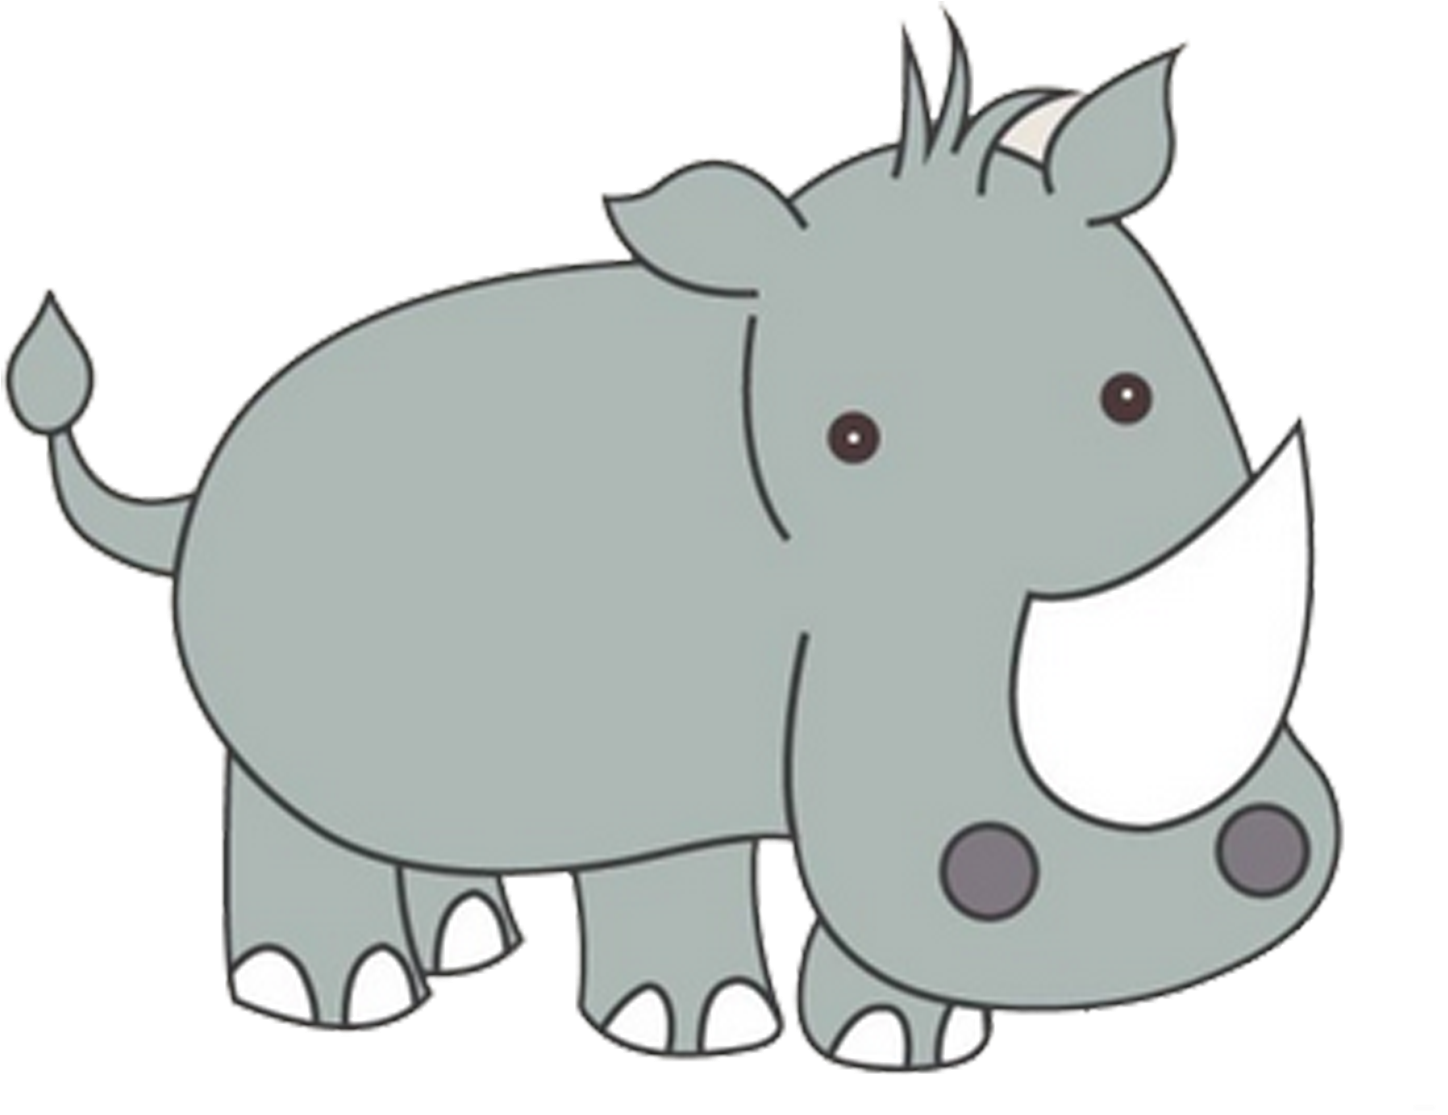 A Cartoon Rhinoceros With A Black Background